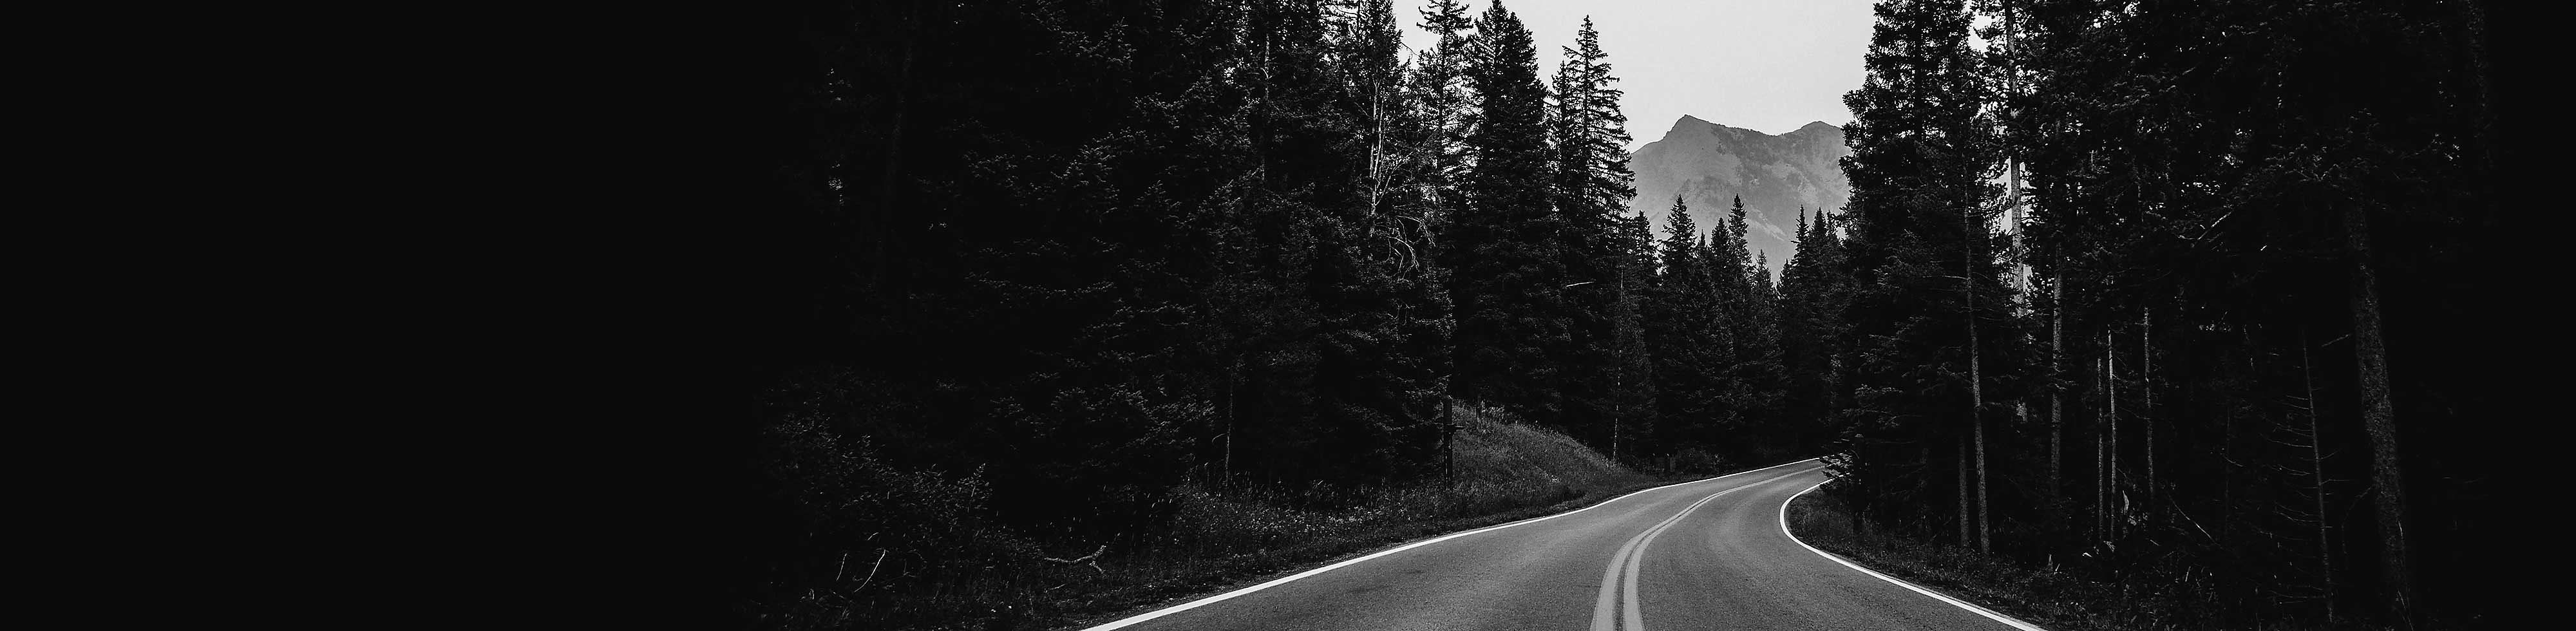 Černobílý snímek klikaté silnice obklopené stromy s horou v pozadí